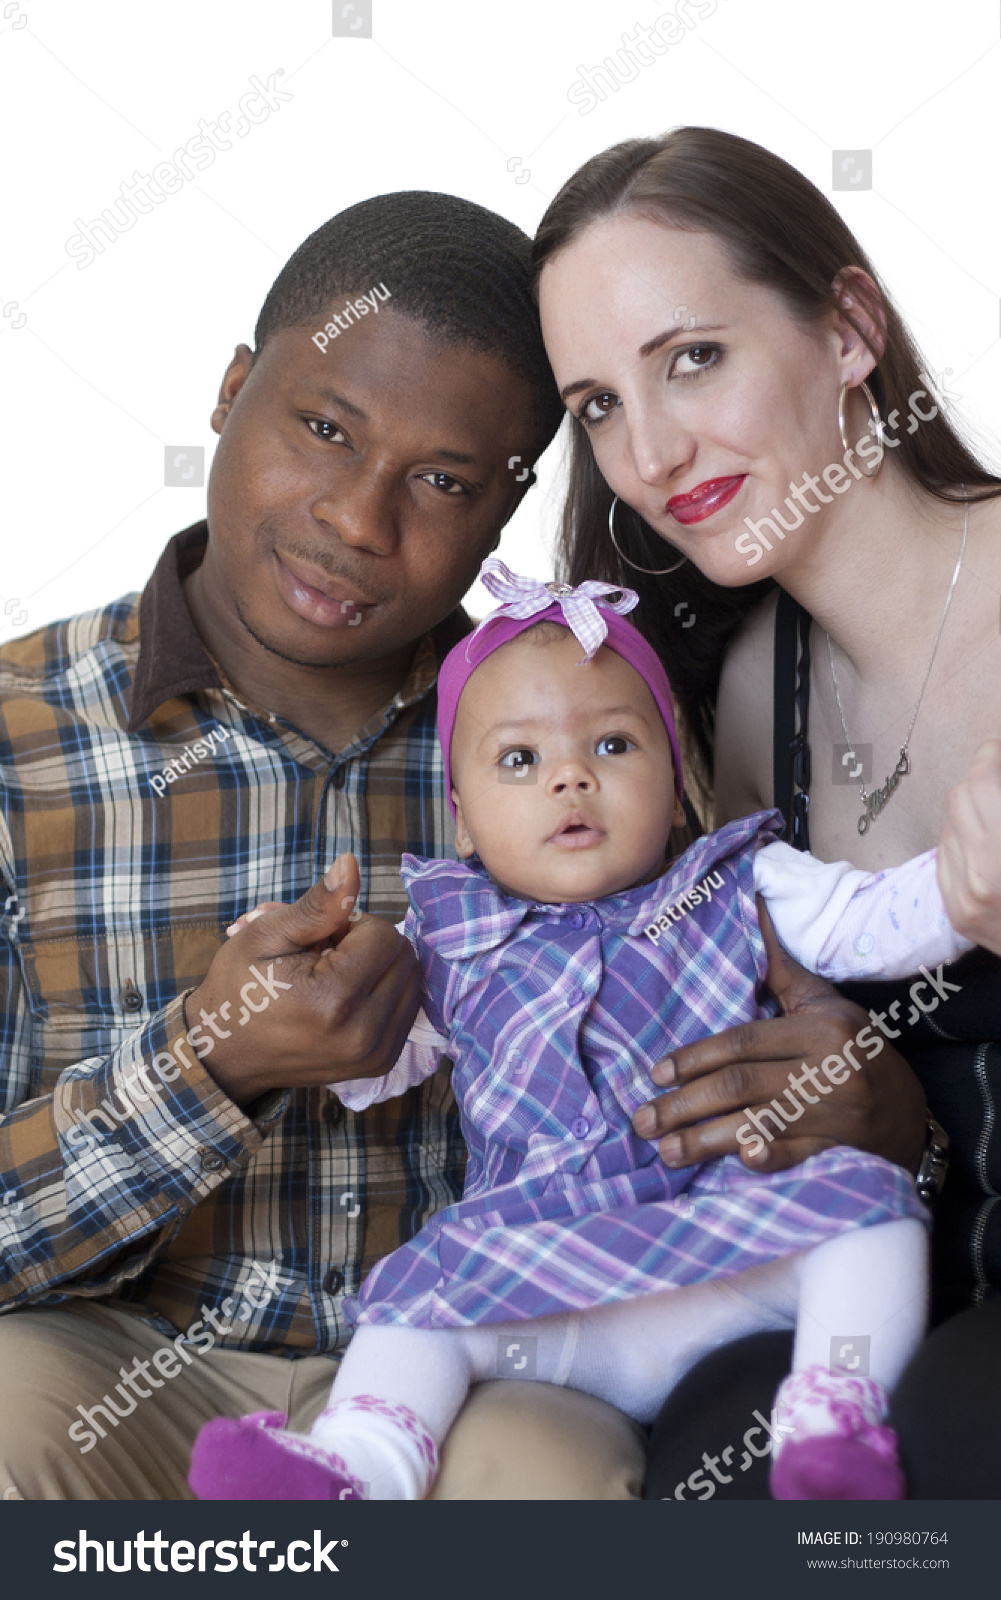 Black white baby with man woman has white White Girl